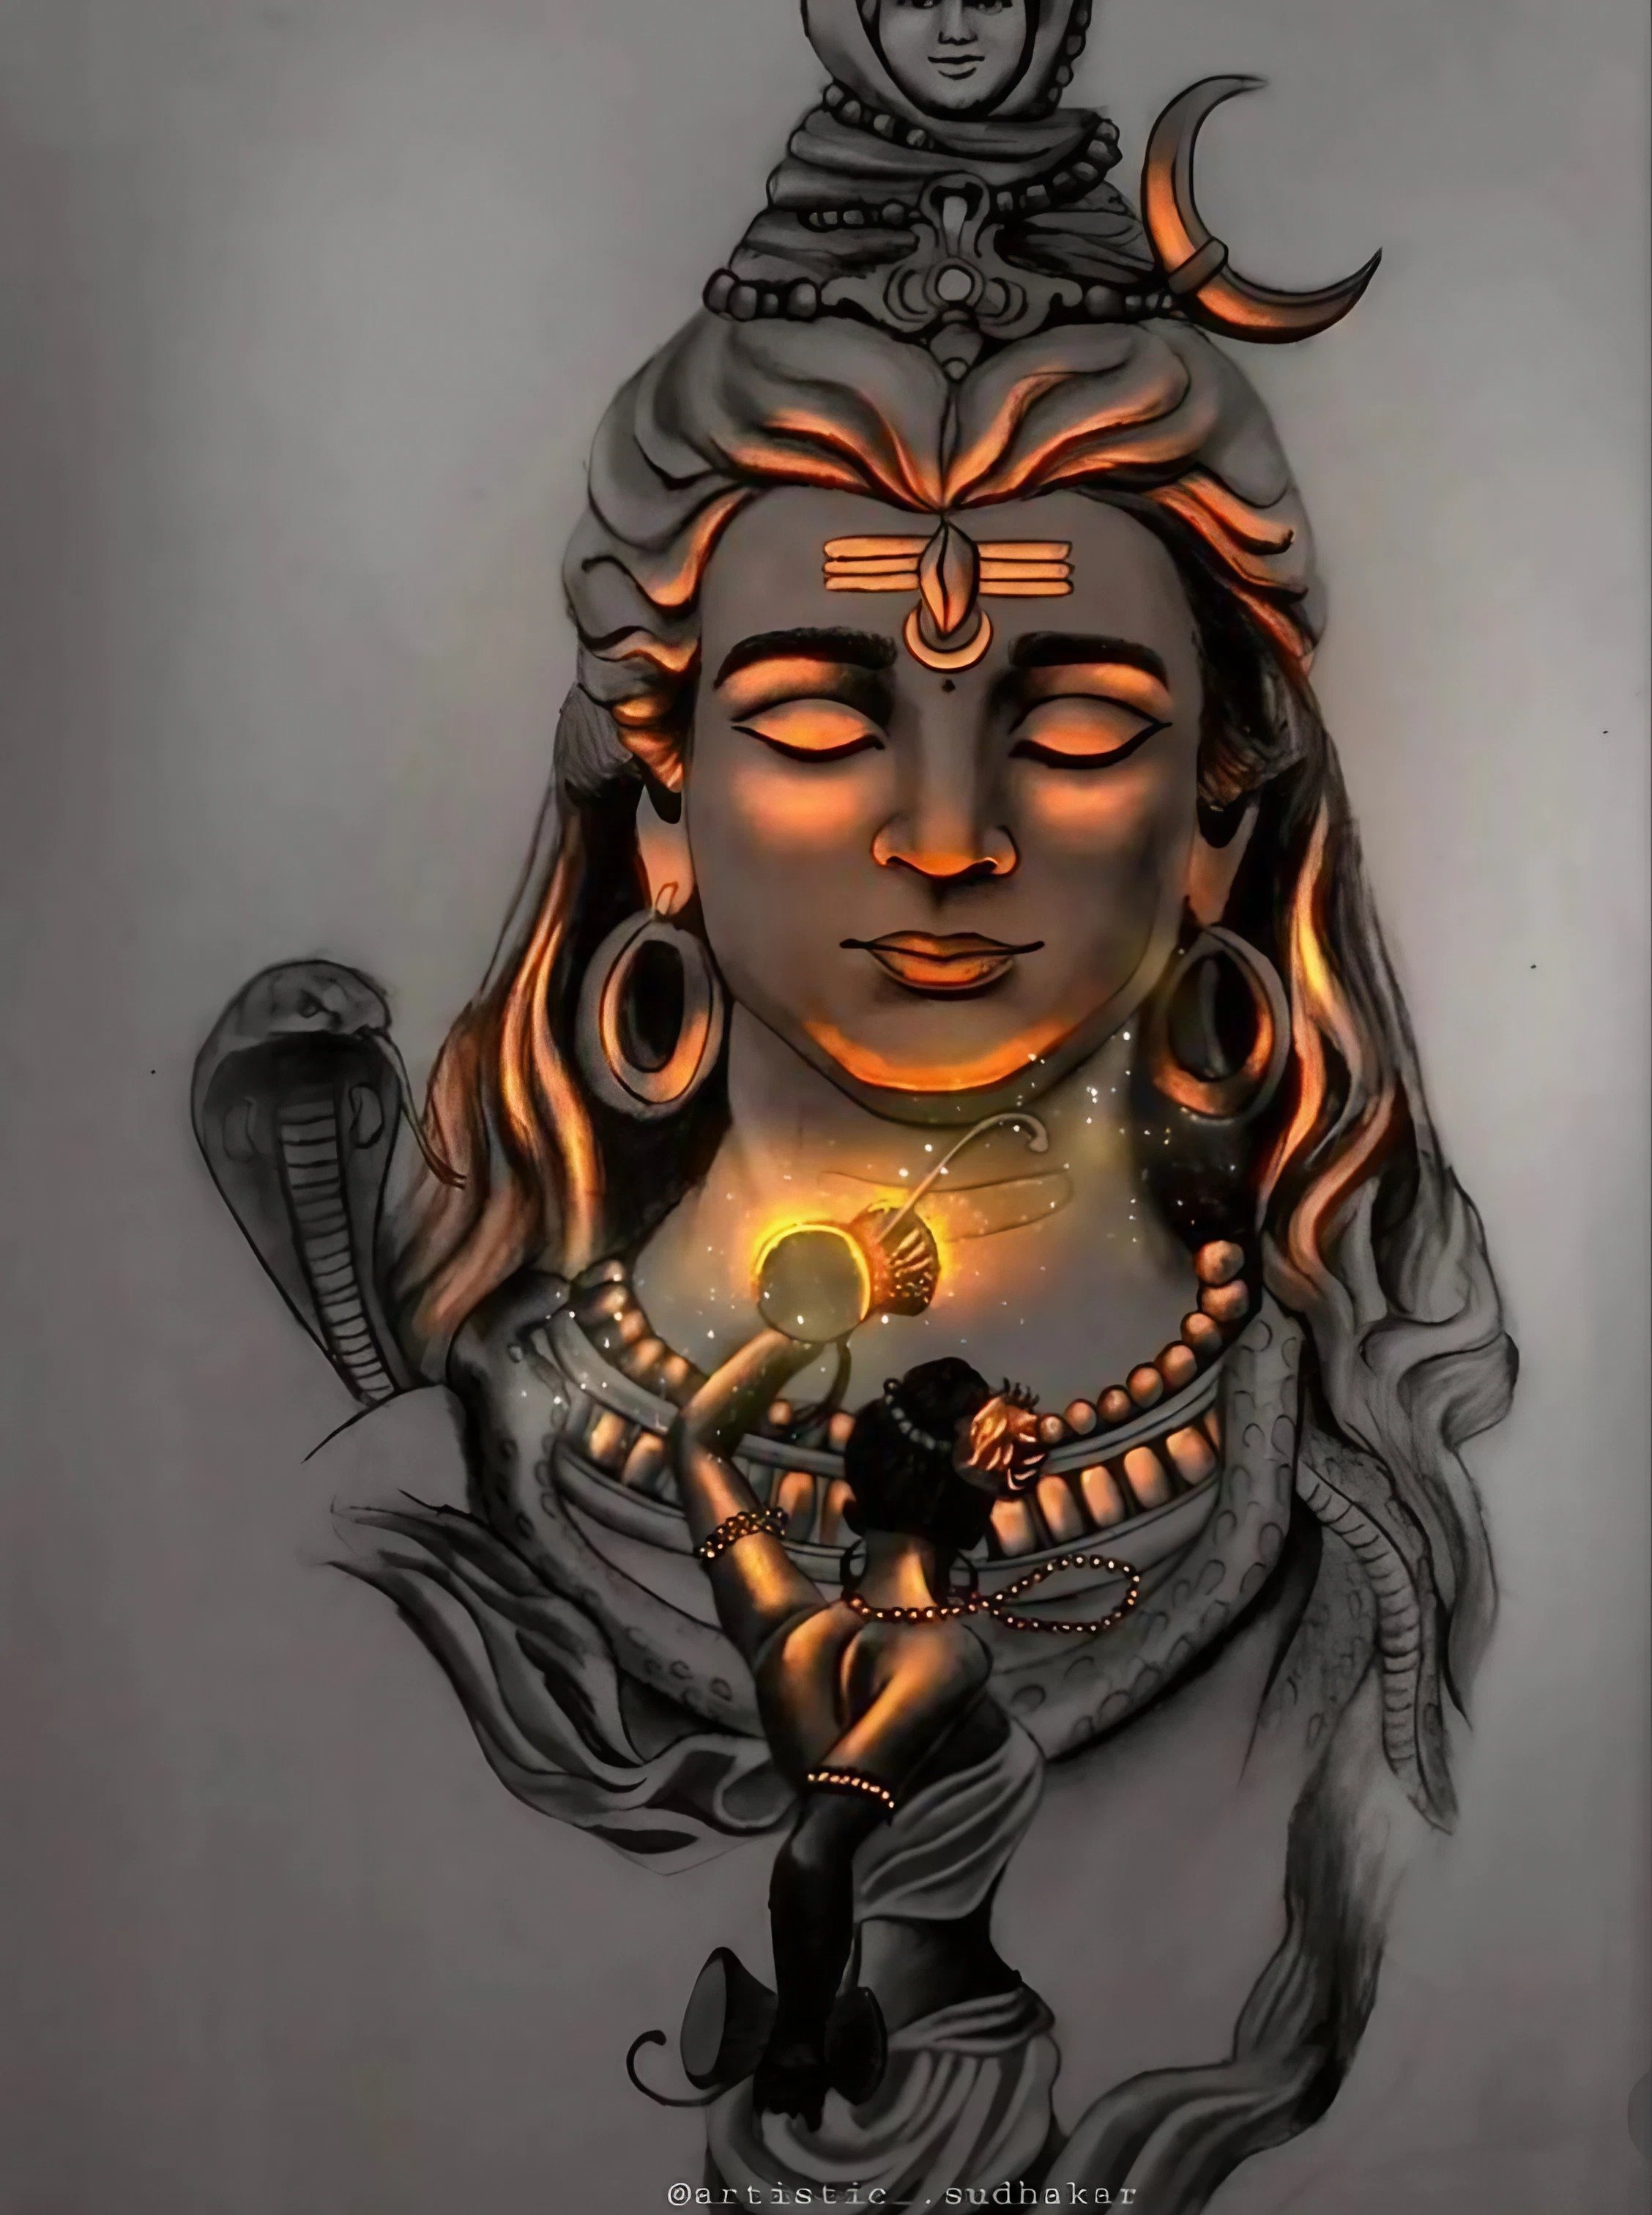 भगवान शिव को तीसरी आंख कैसे मिली? | Bholenath Ki Teesri Aankh